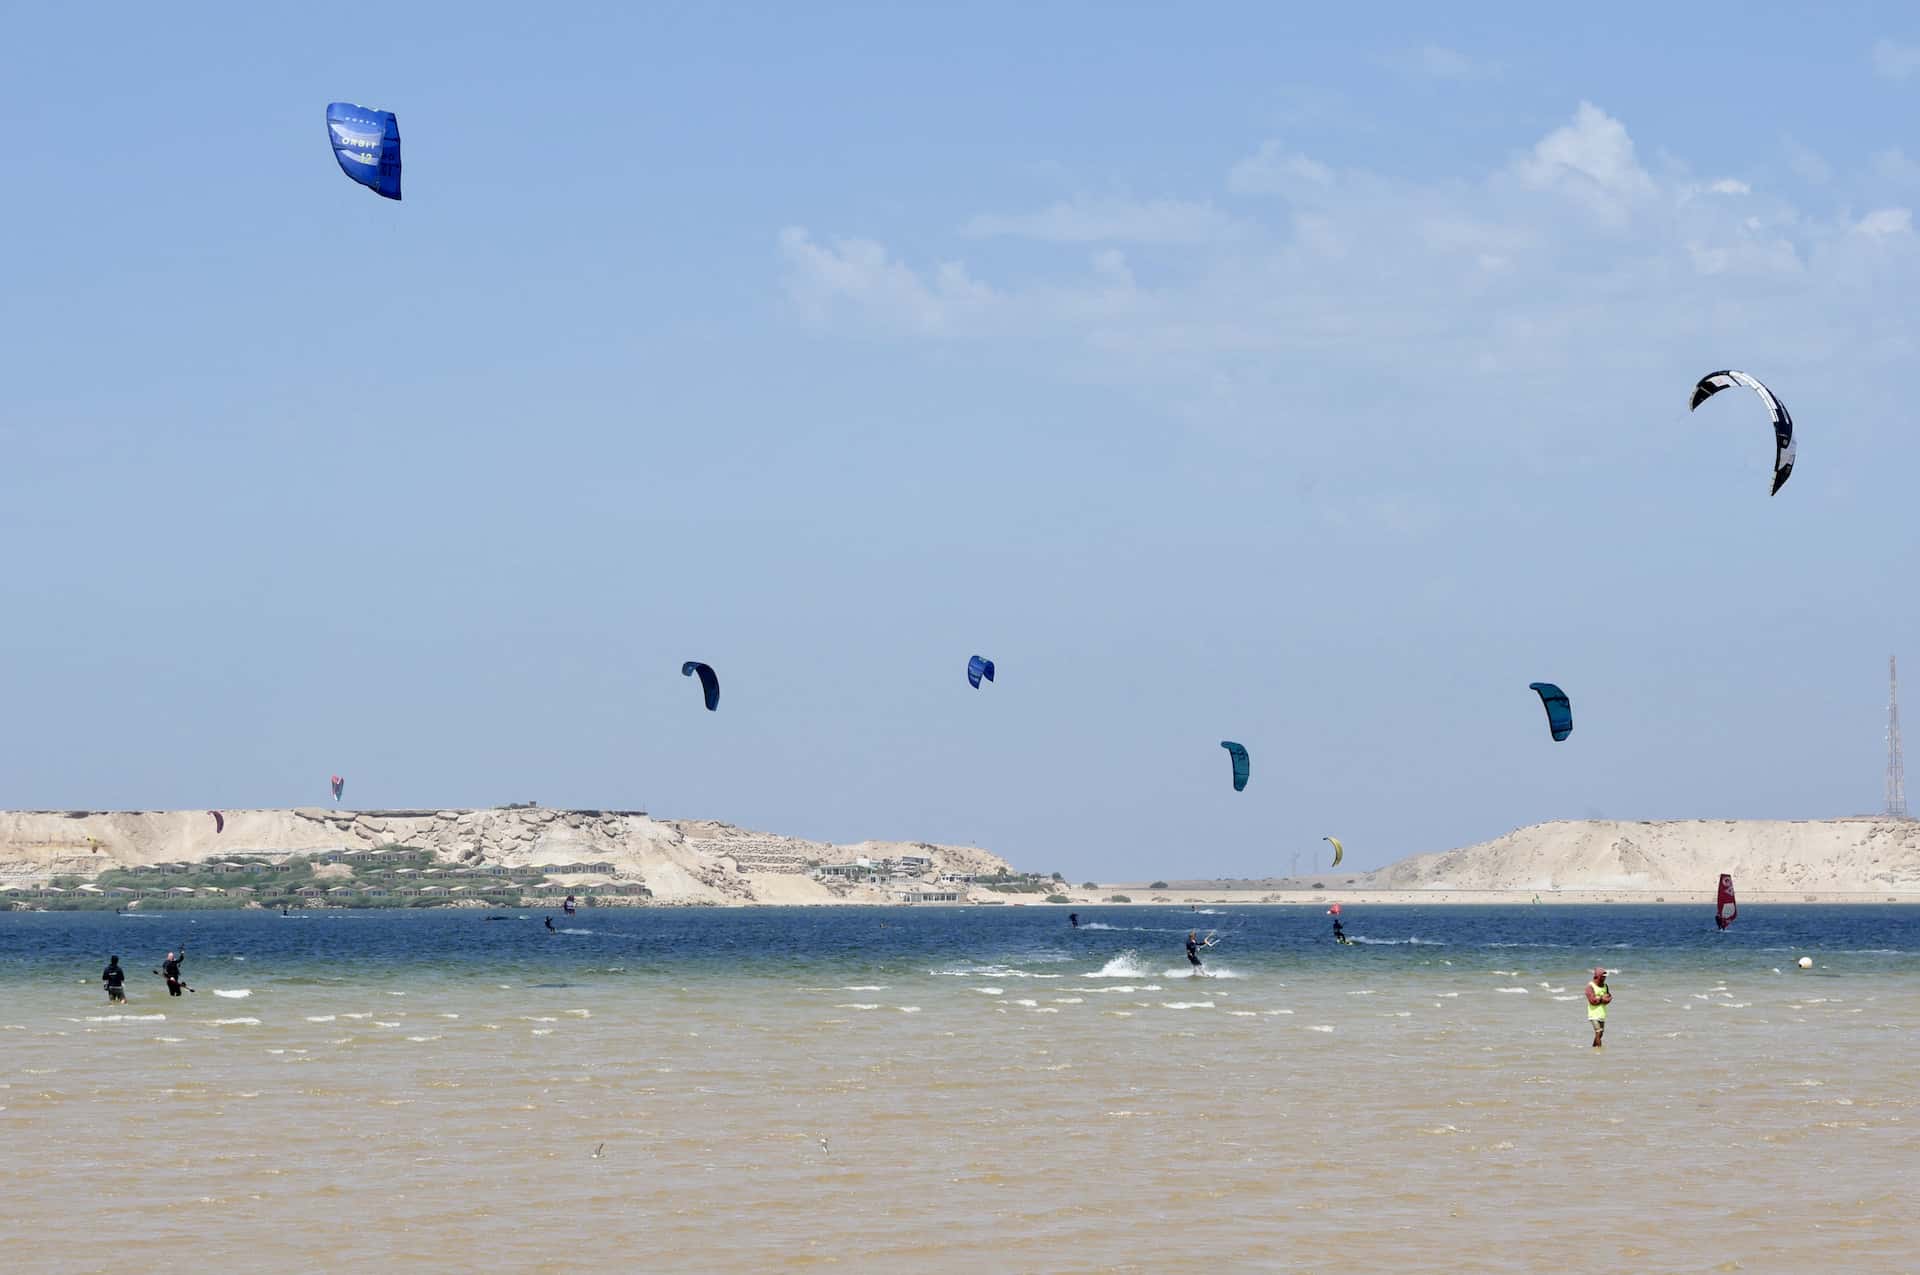 Kites riding in the lagoon.